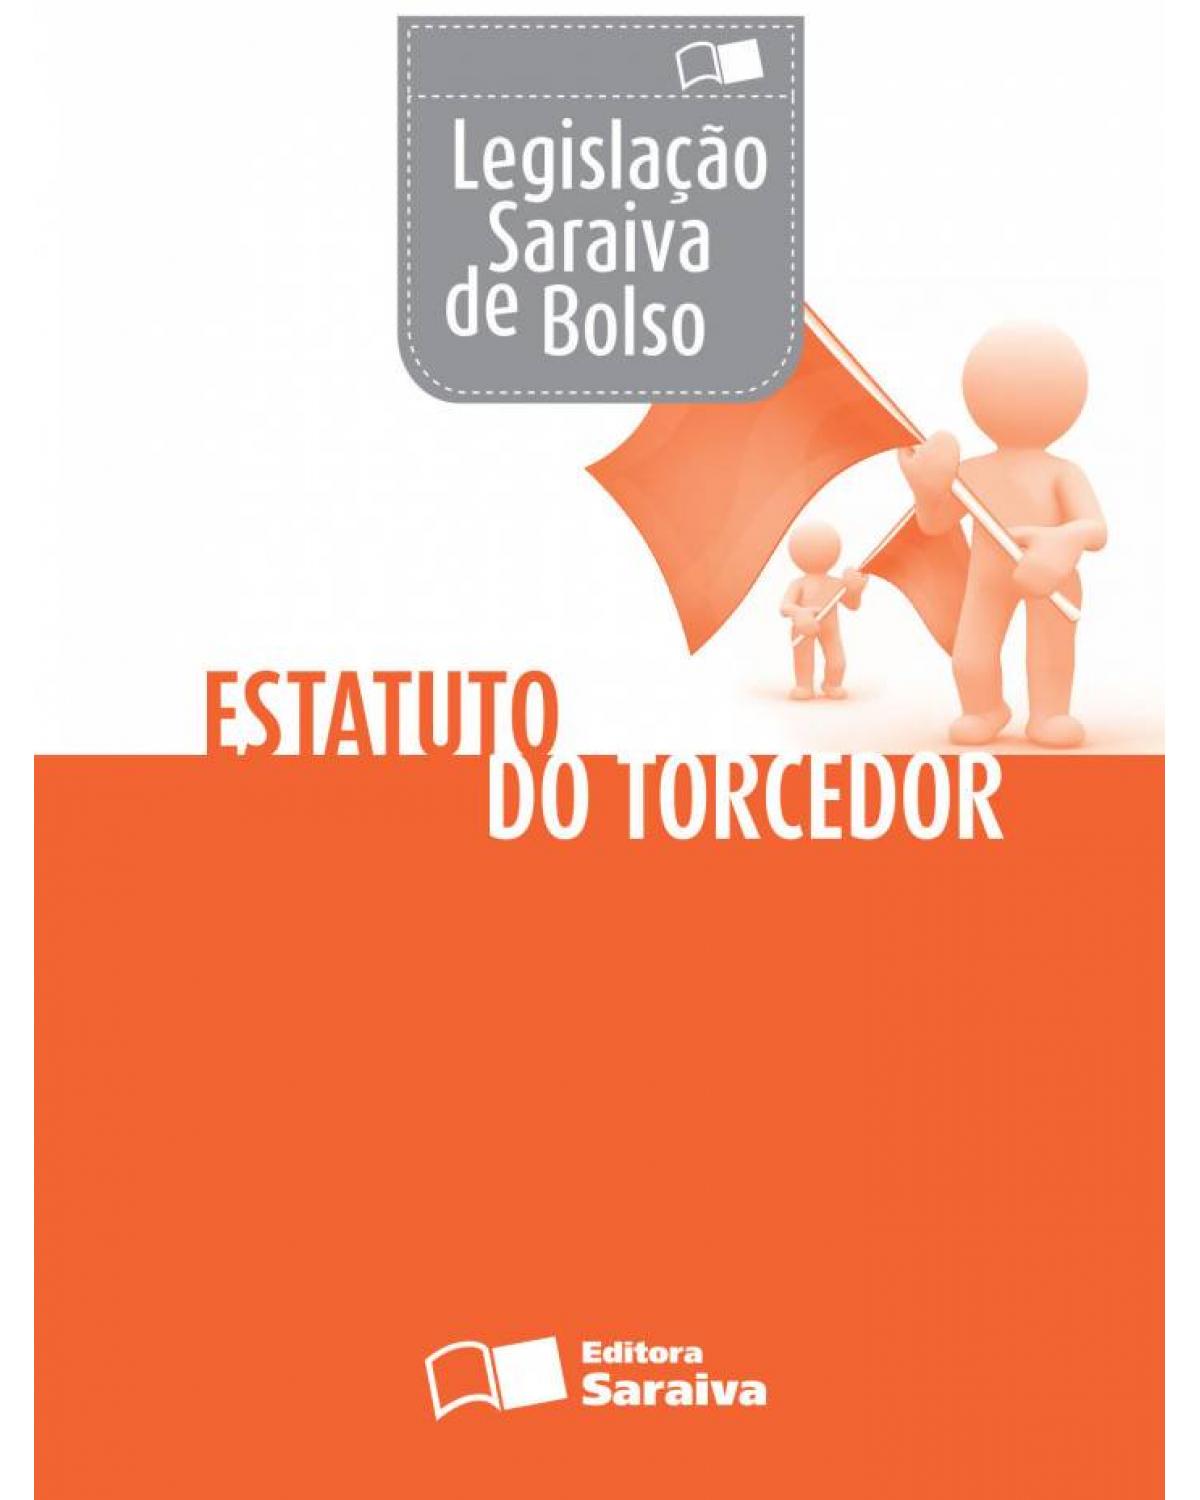 Legislação Saraiva de bolso - estatuto do torcedor - 1ª Edição | 2013